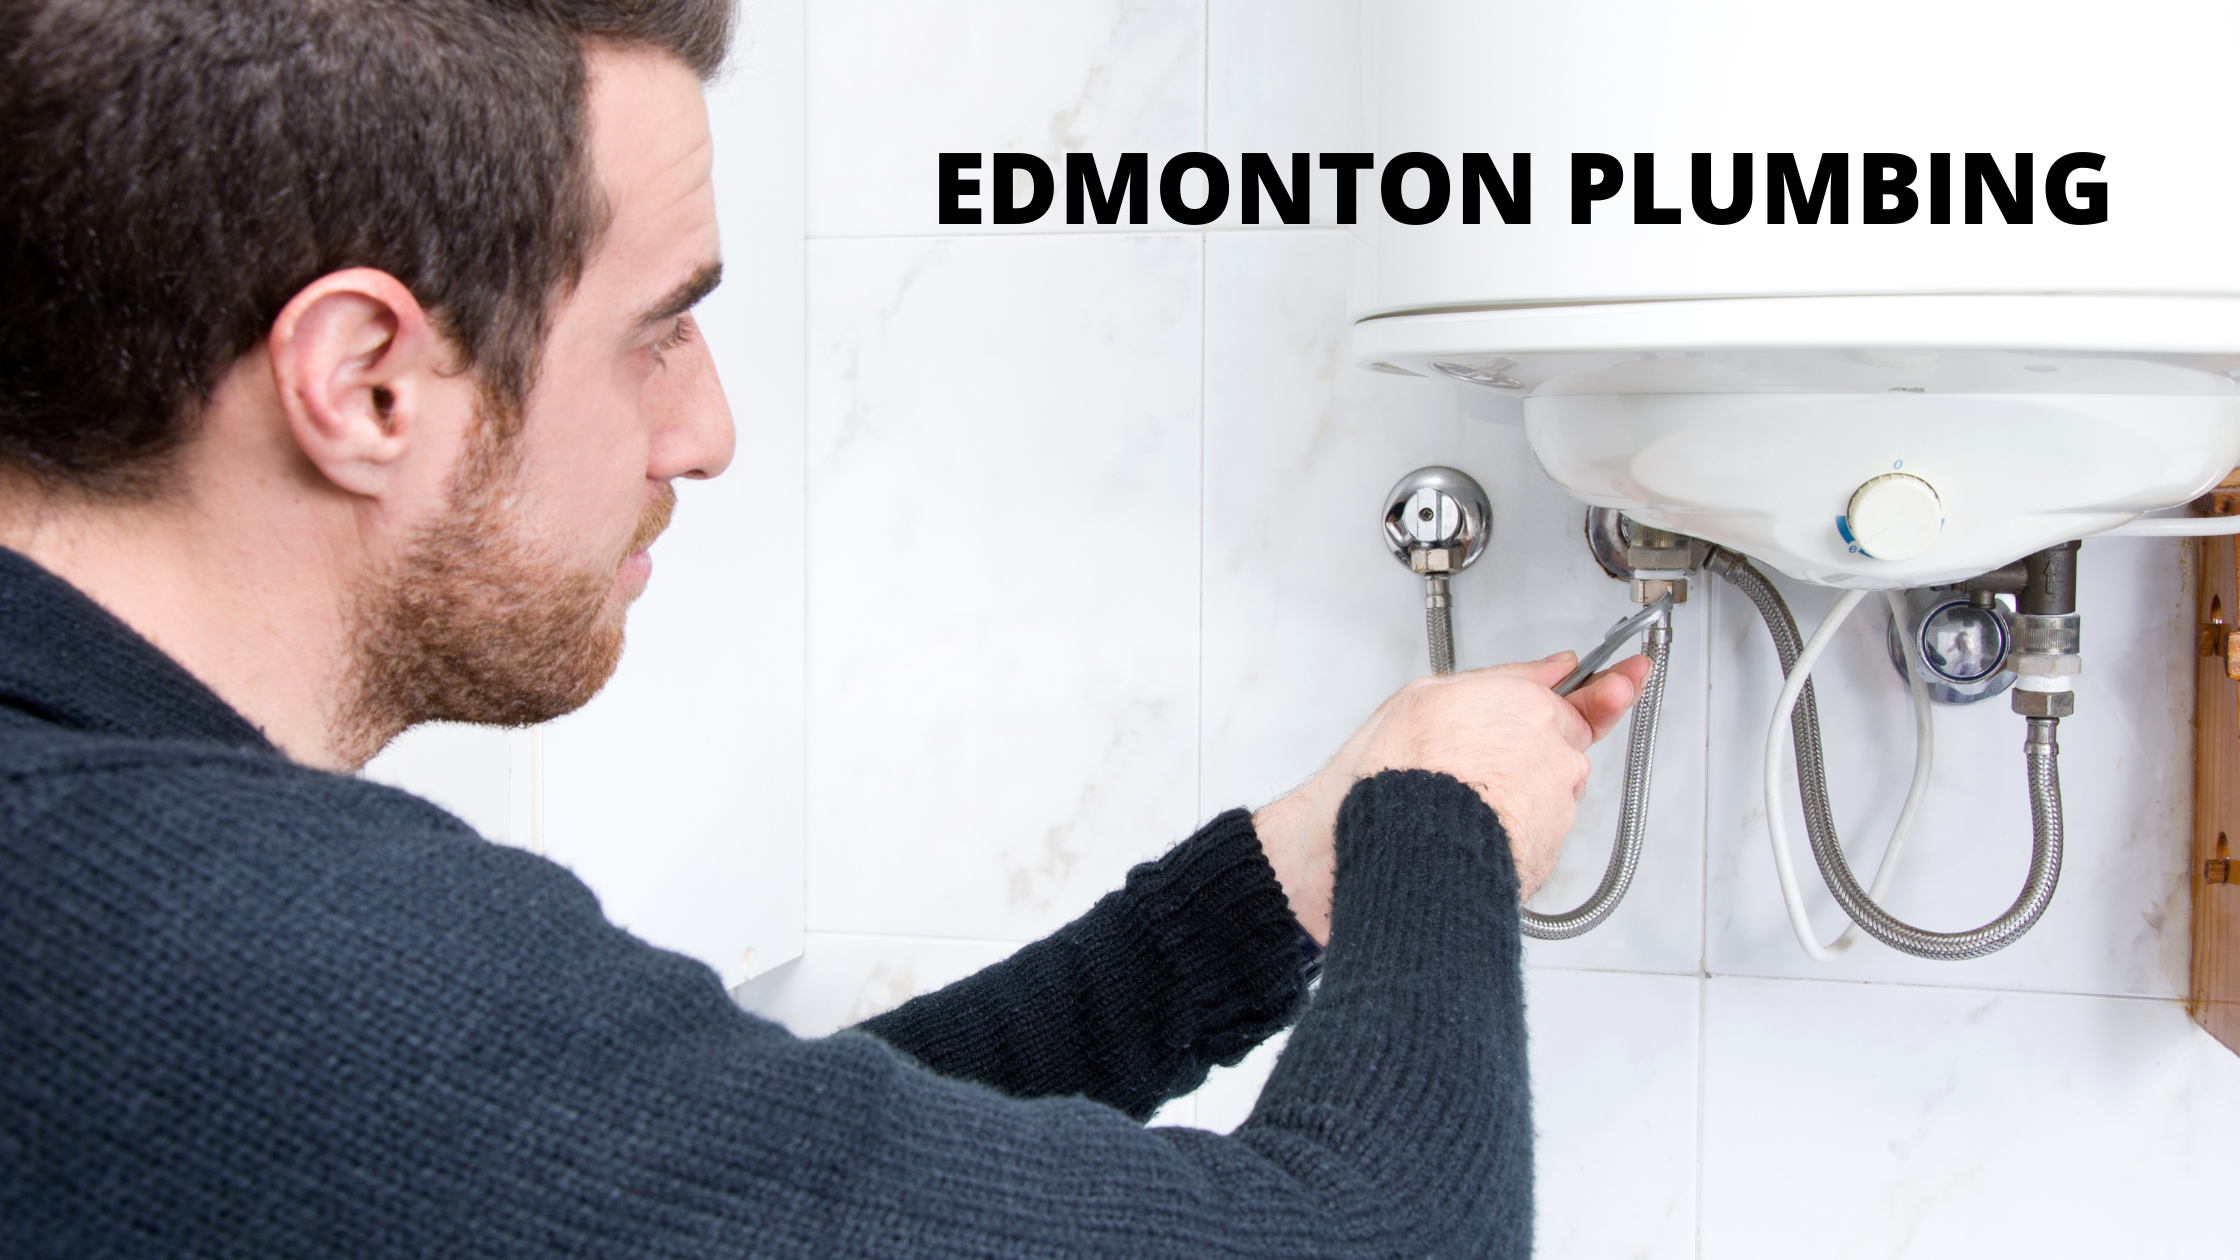 Edmonton plumbing